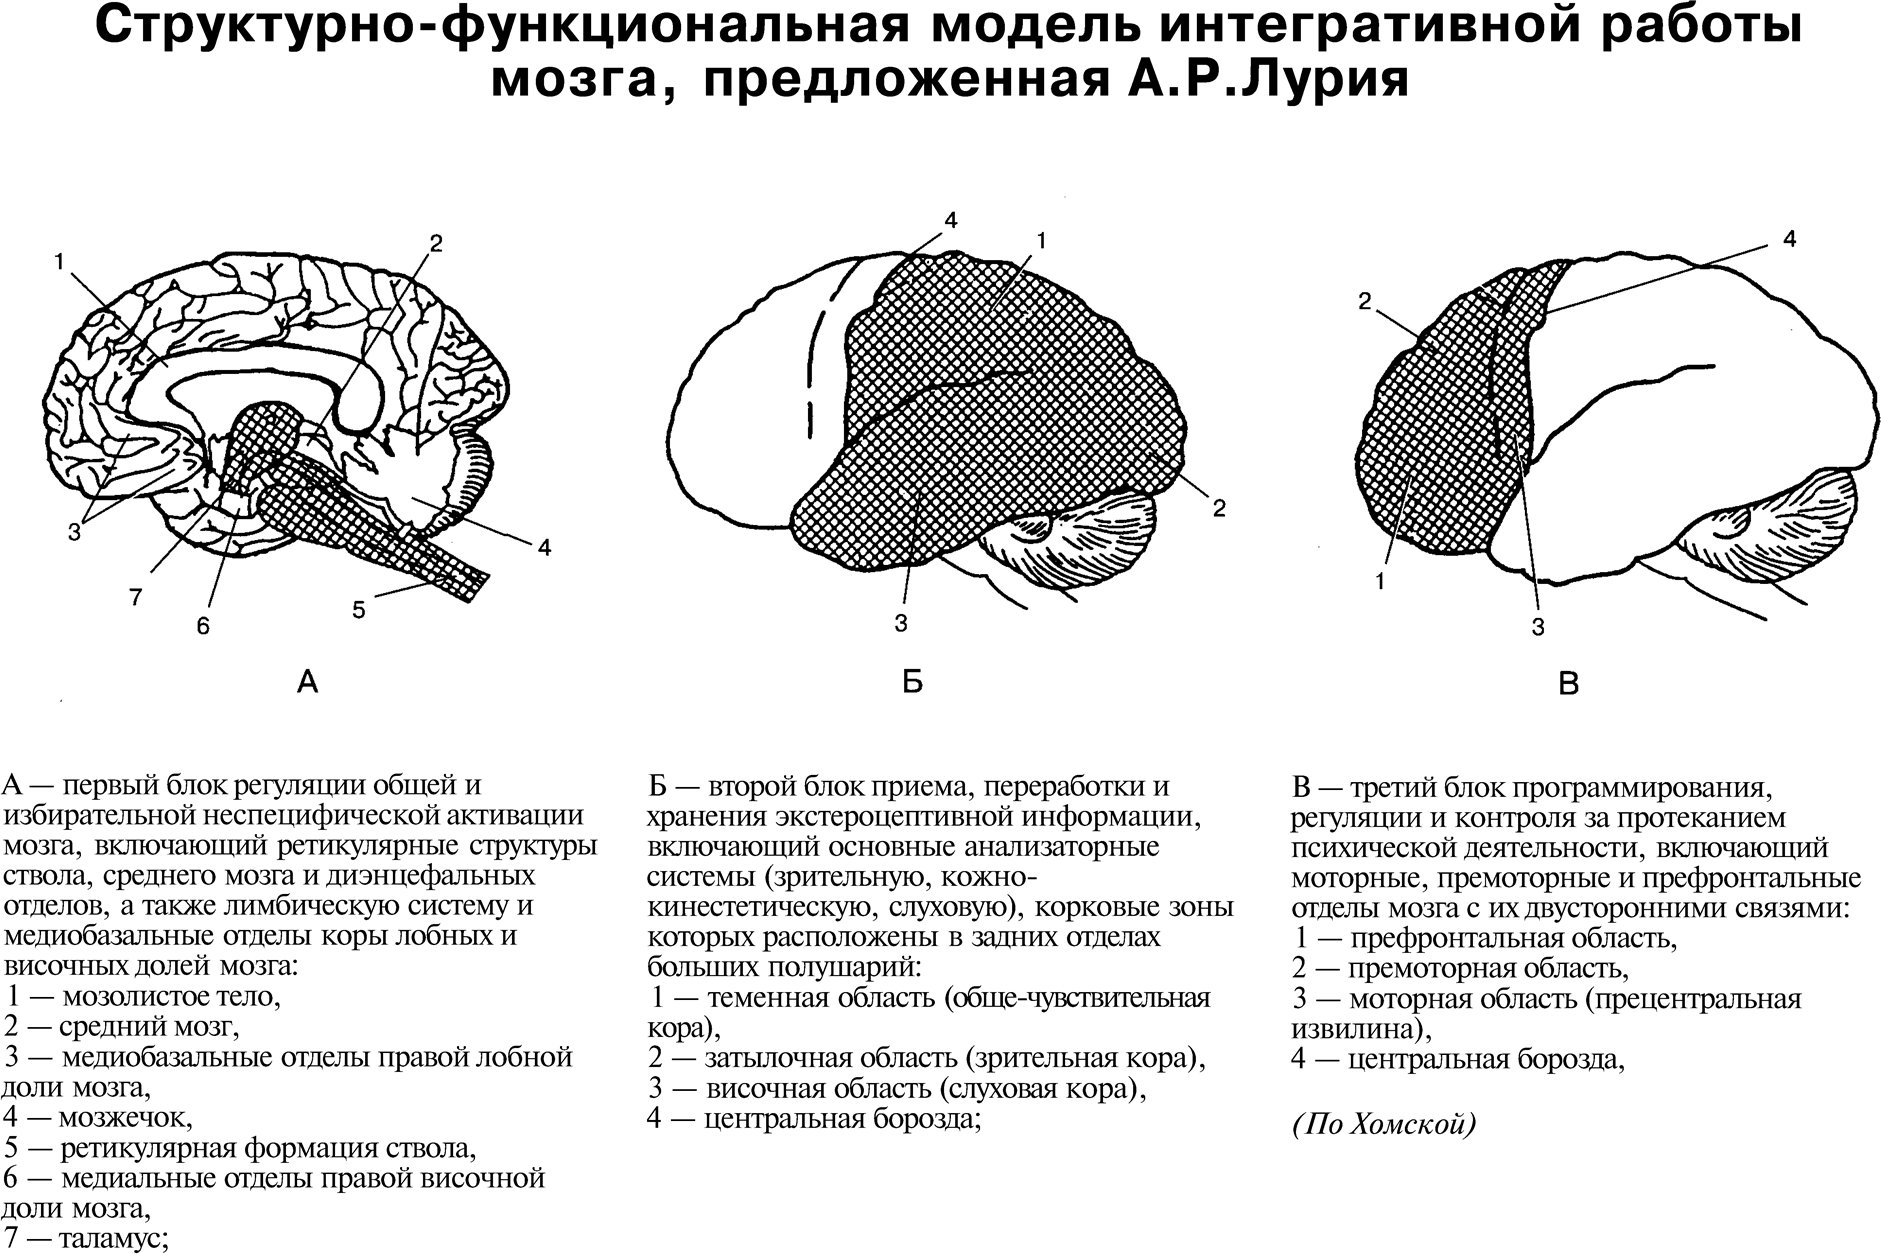 Структурно-функциональная модель интегративной работы мозга, предложенная А.Р.Лурия